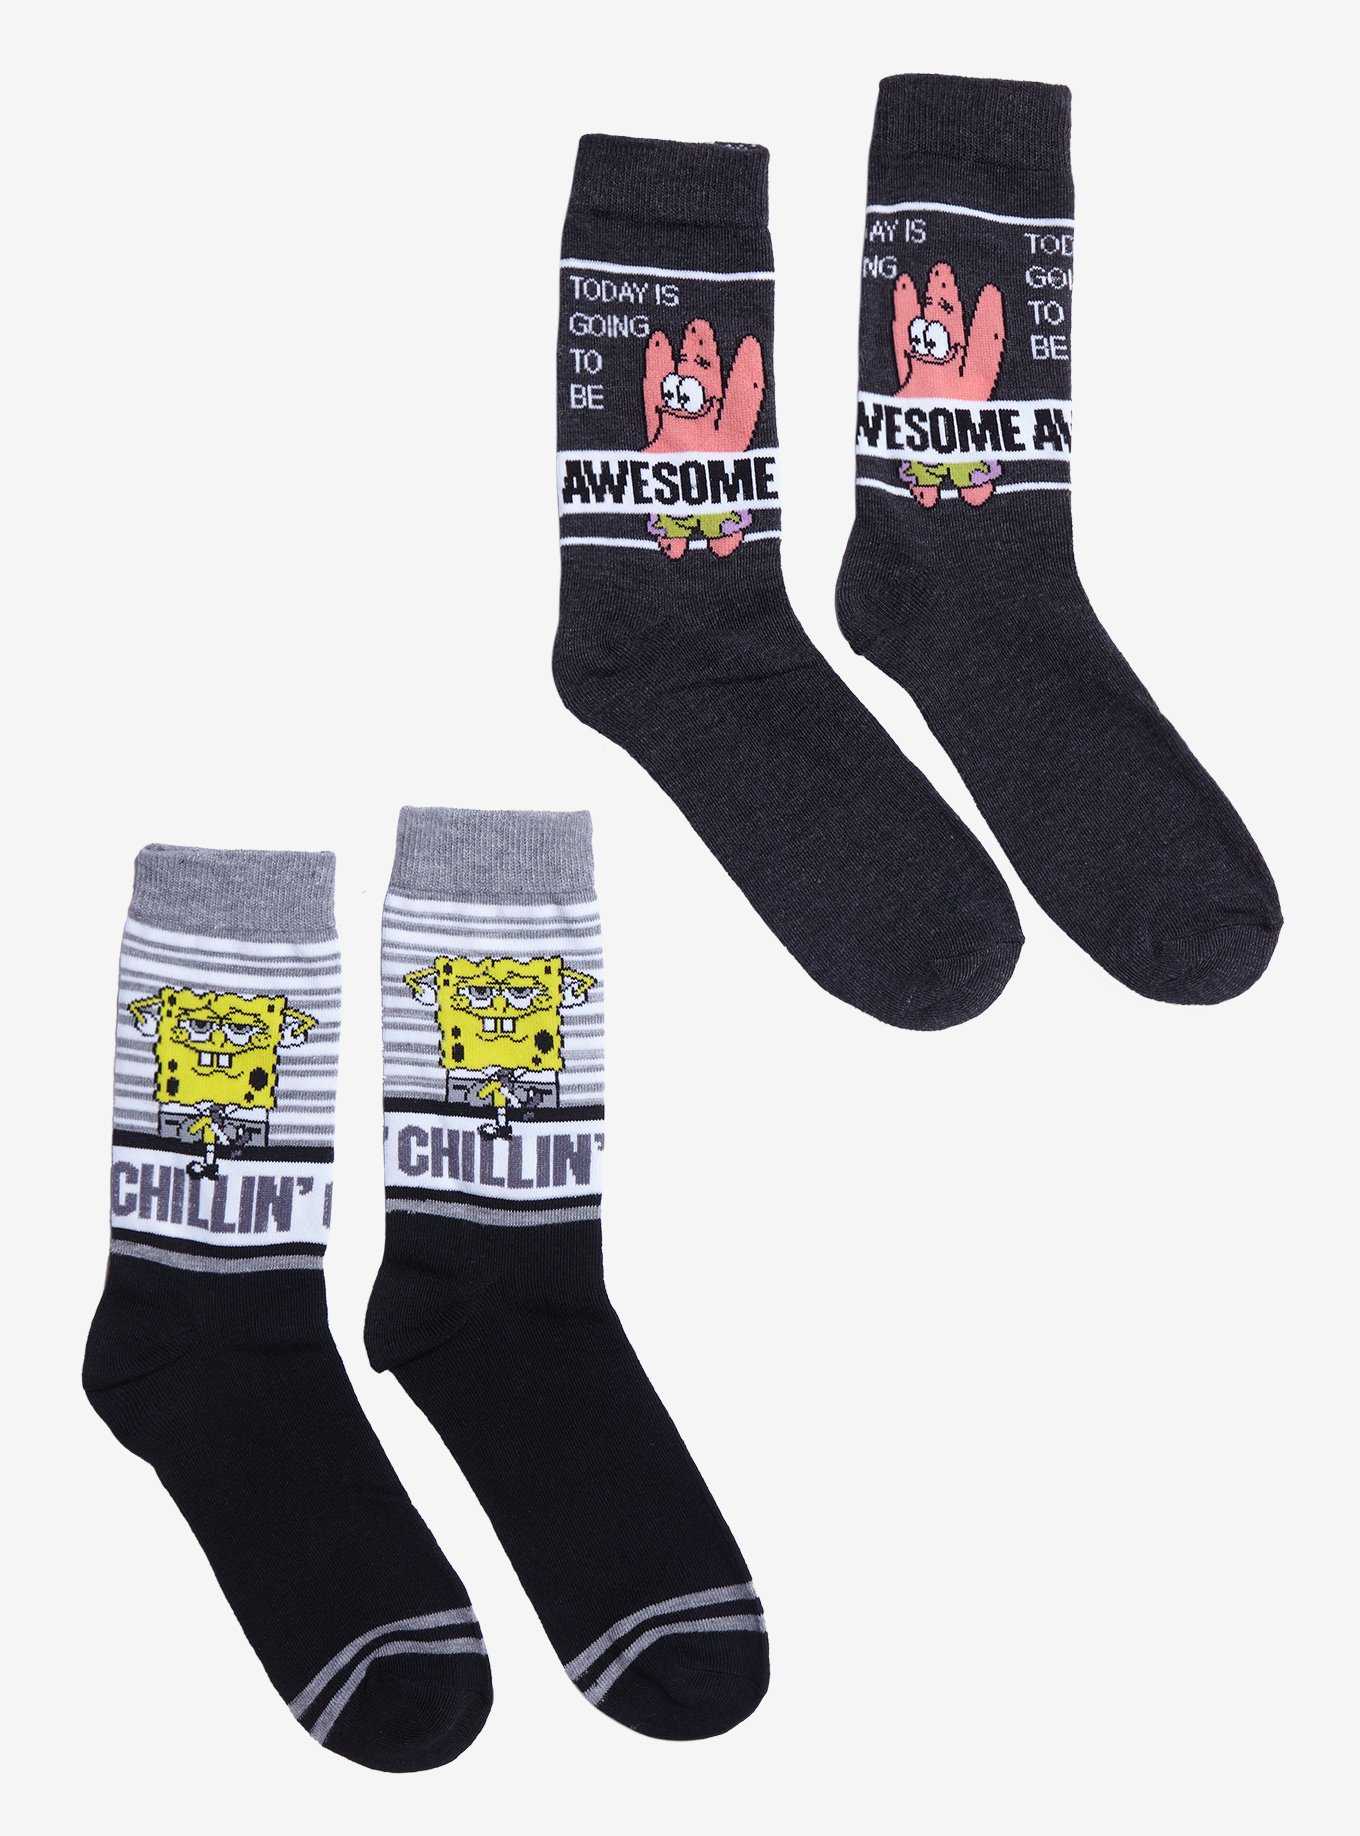 SpongeBob SquarePants Awesome & Chillin' Crew Socks 2 Pair, , hi-res